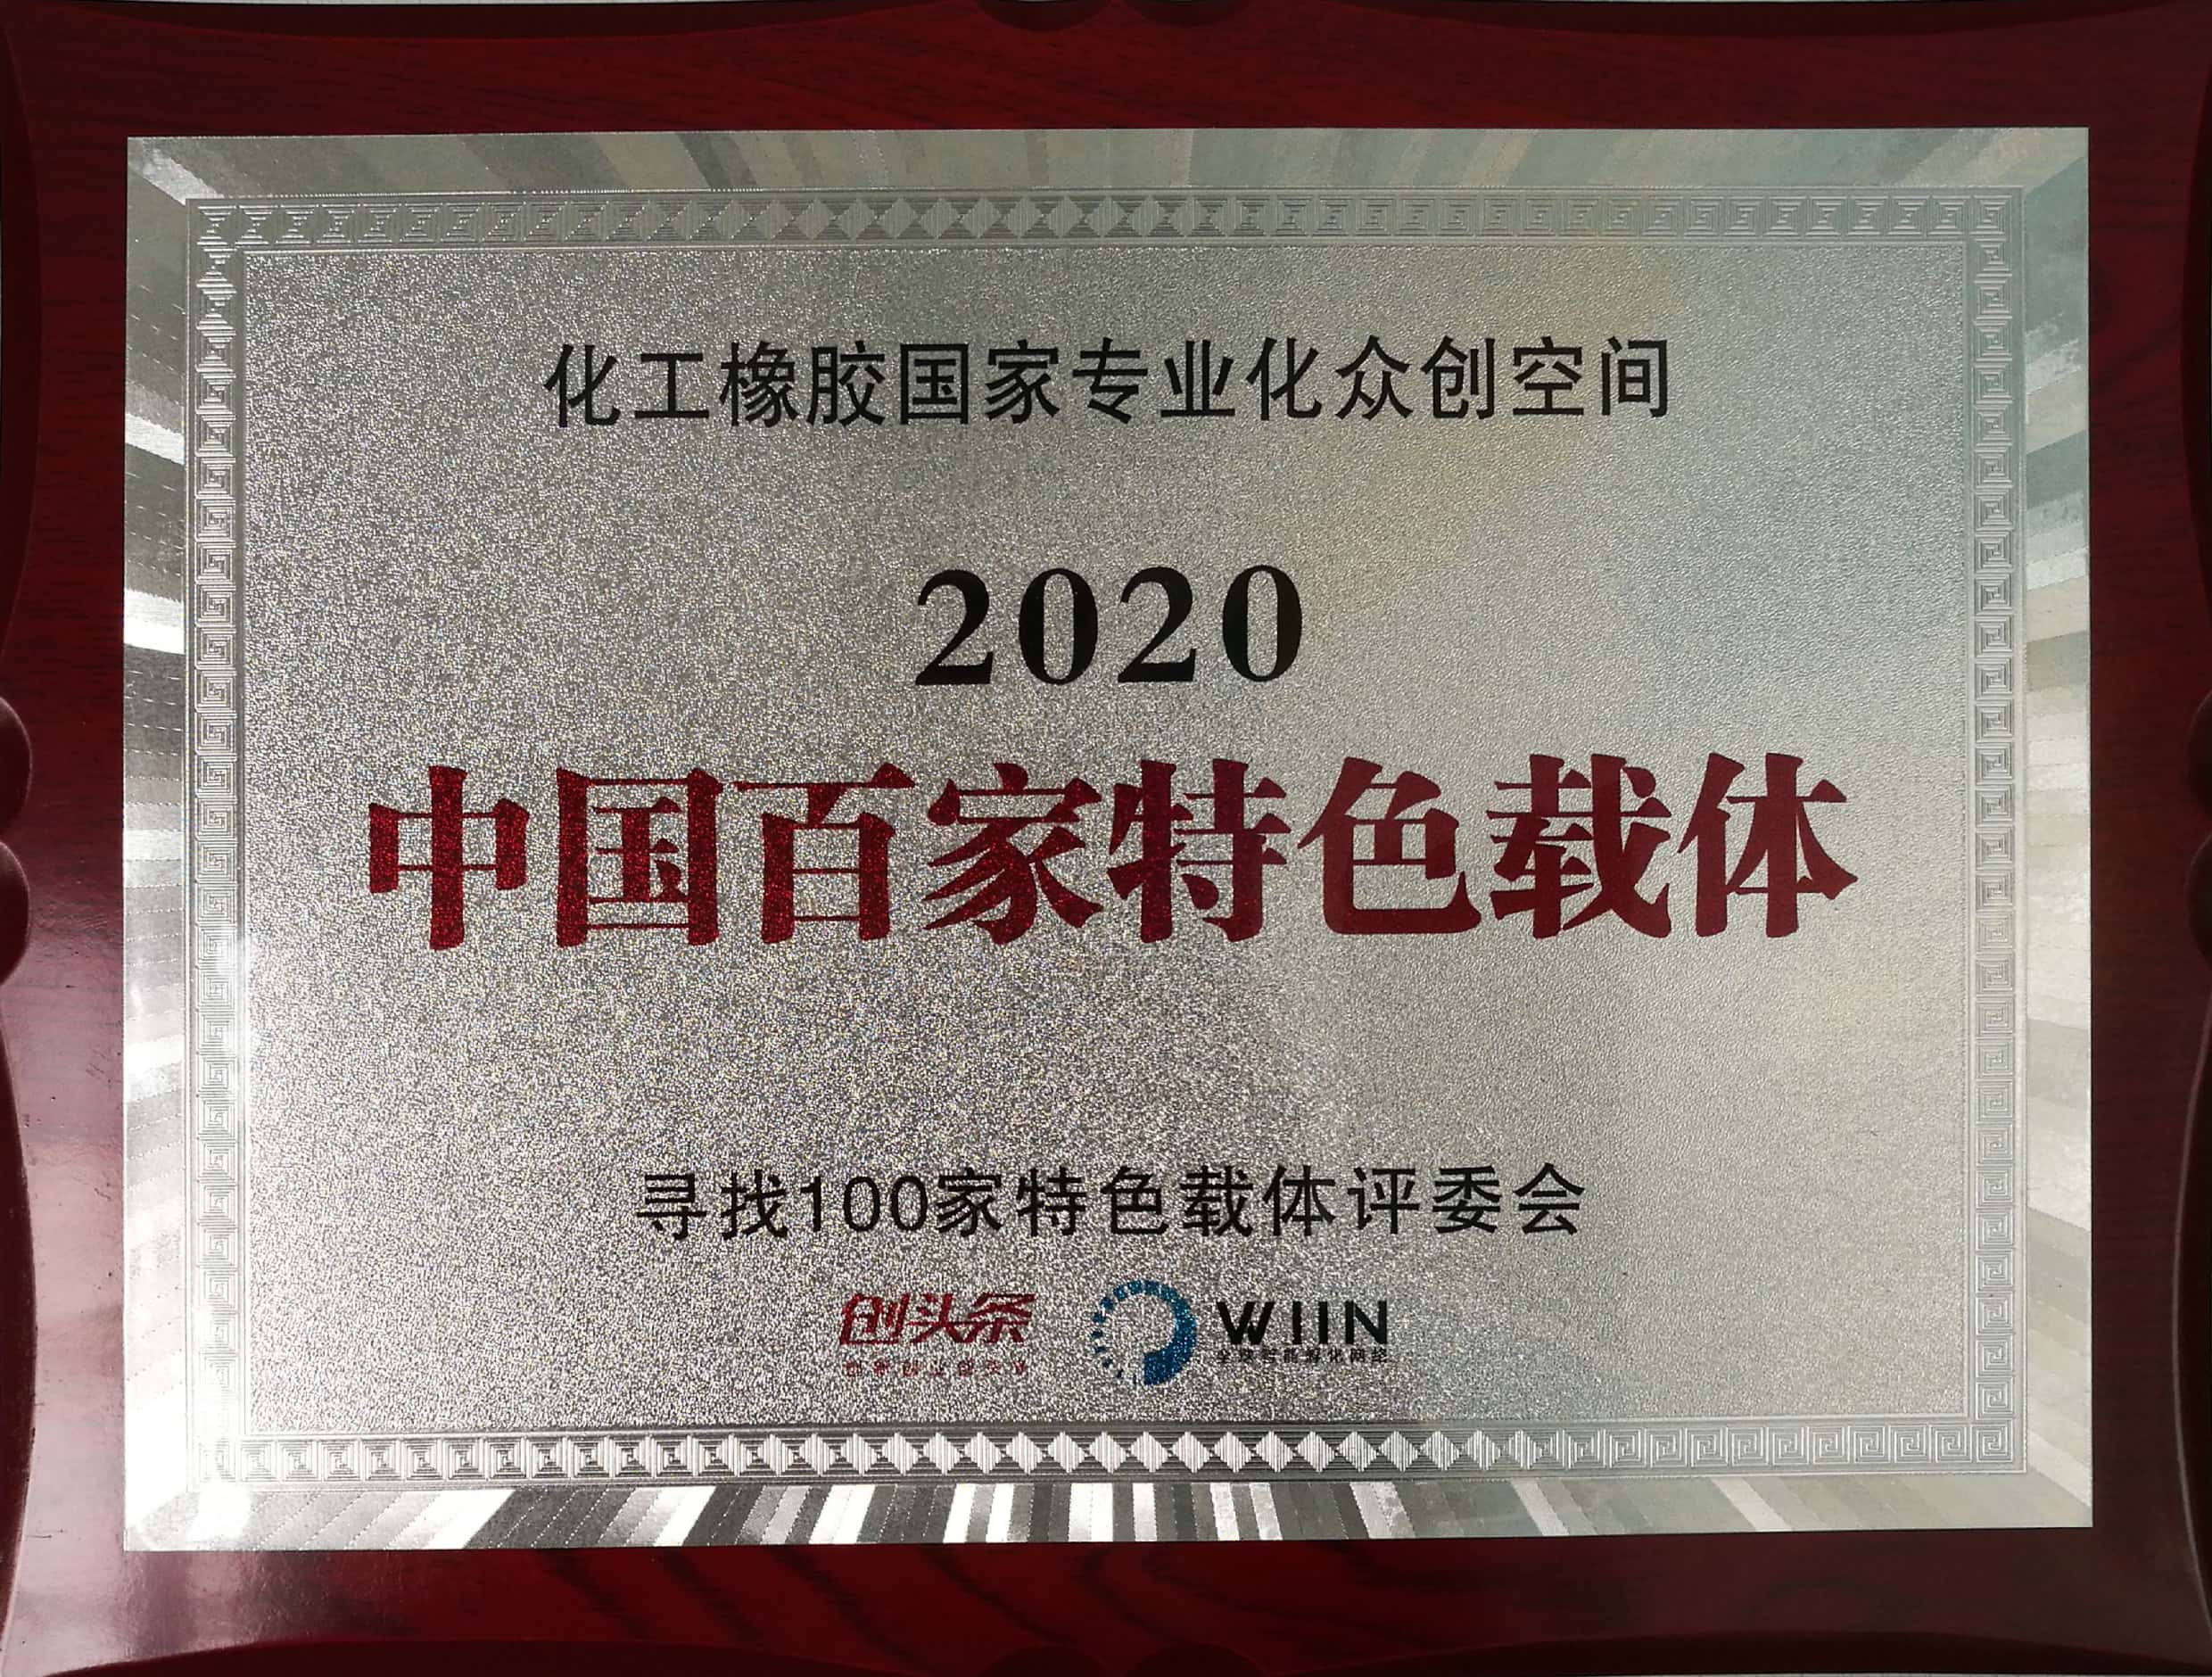 2020中国百家特色载体-化工橡胶国家专业化众创空间-寻找100家特色载体评委会